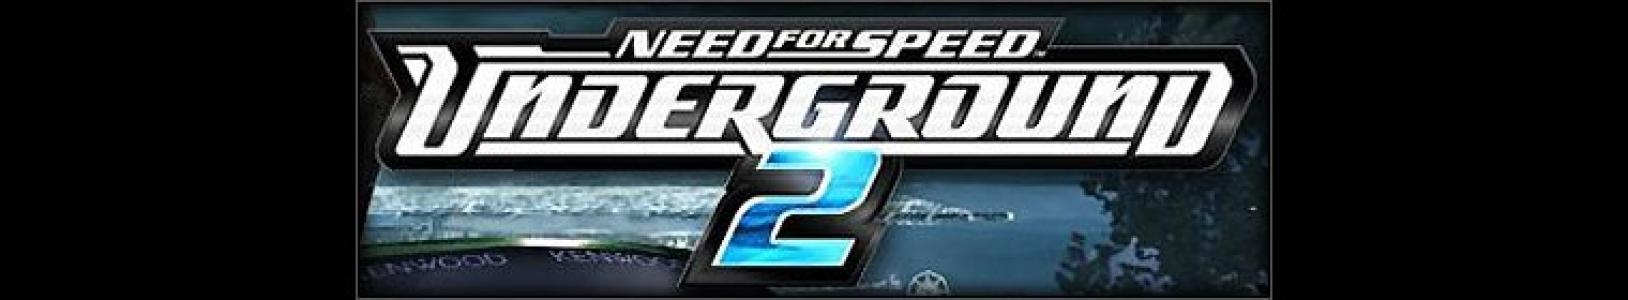 Need for Speed Underground 2 banner